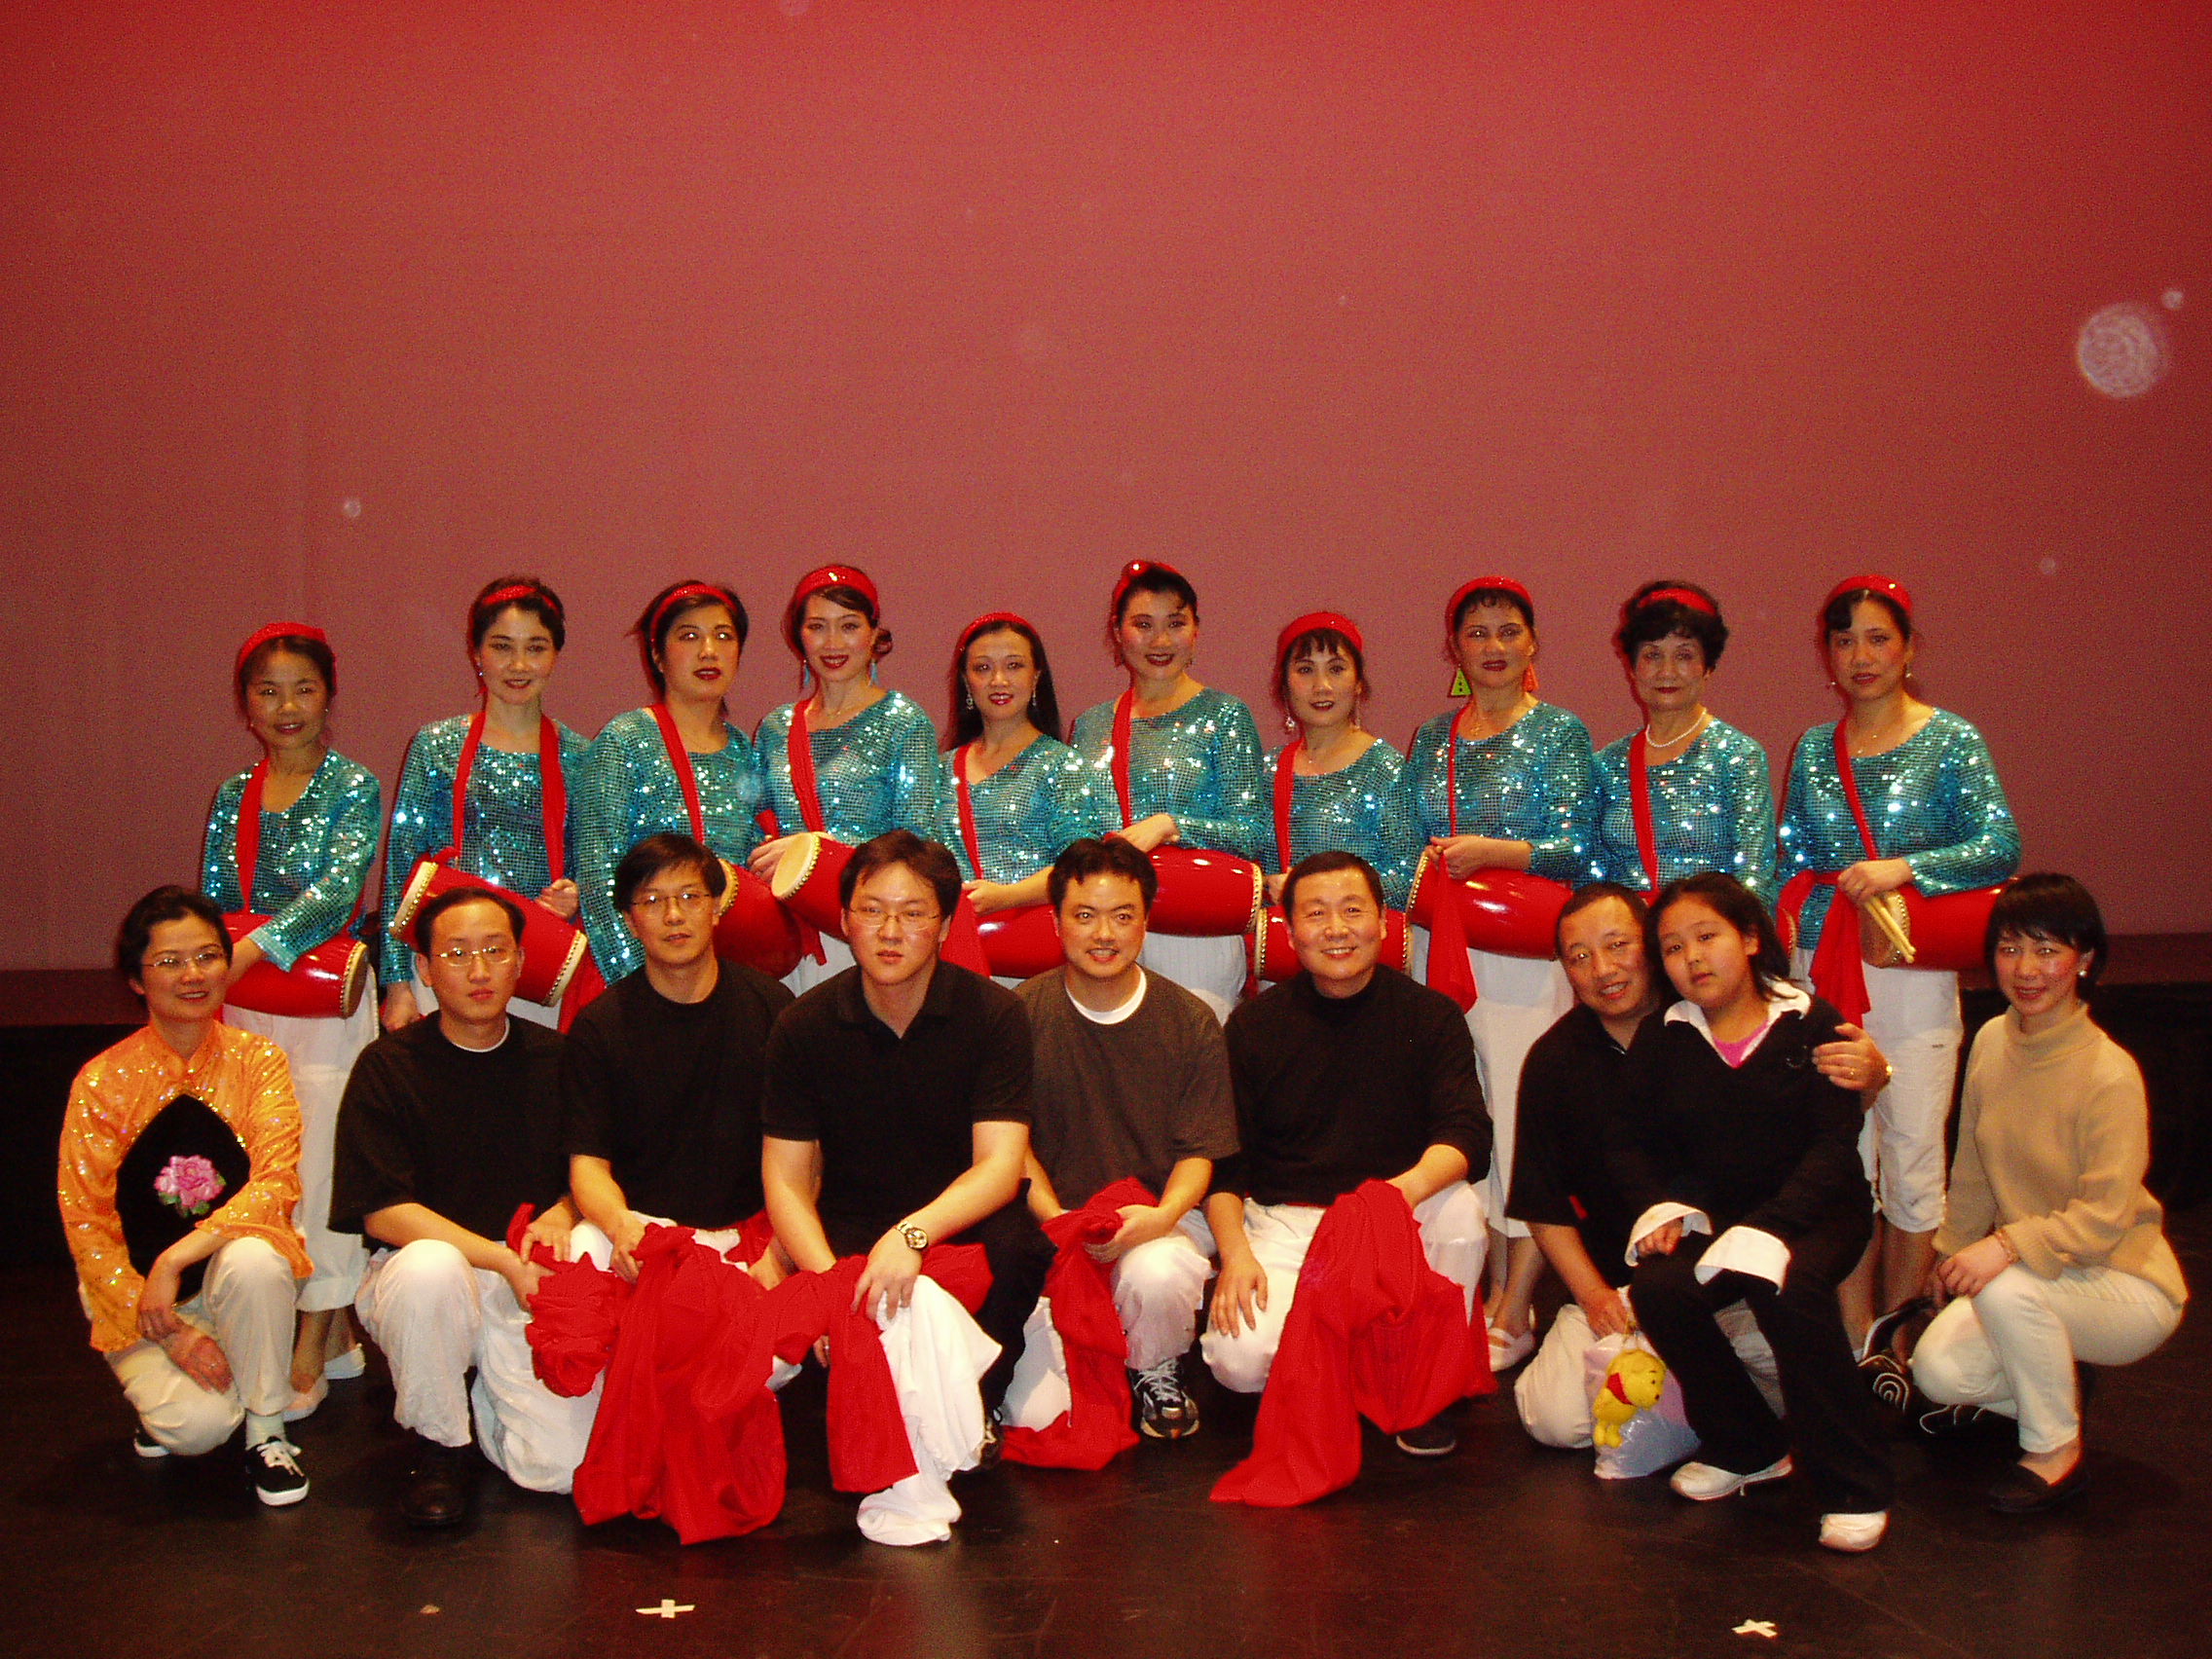 2005 Chinese New Year Celebration Image 1